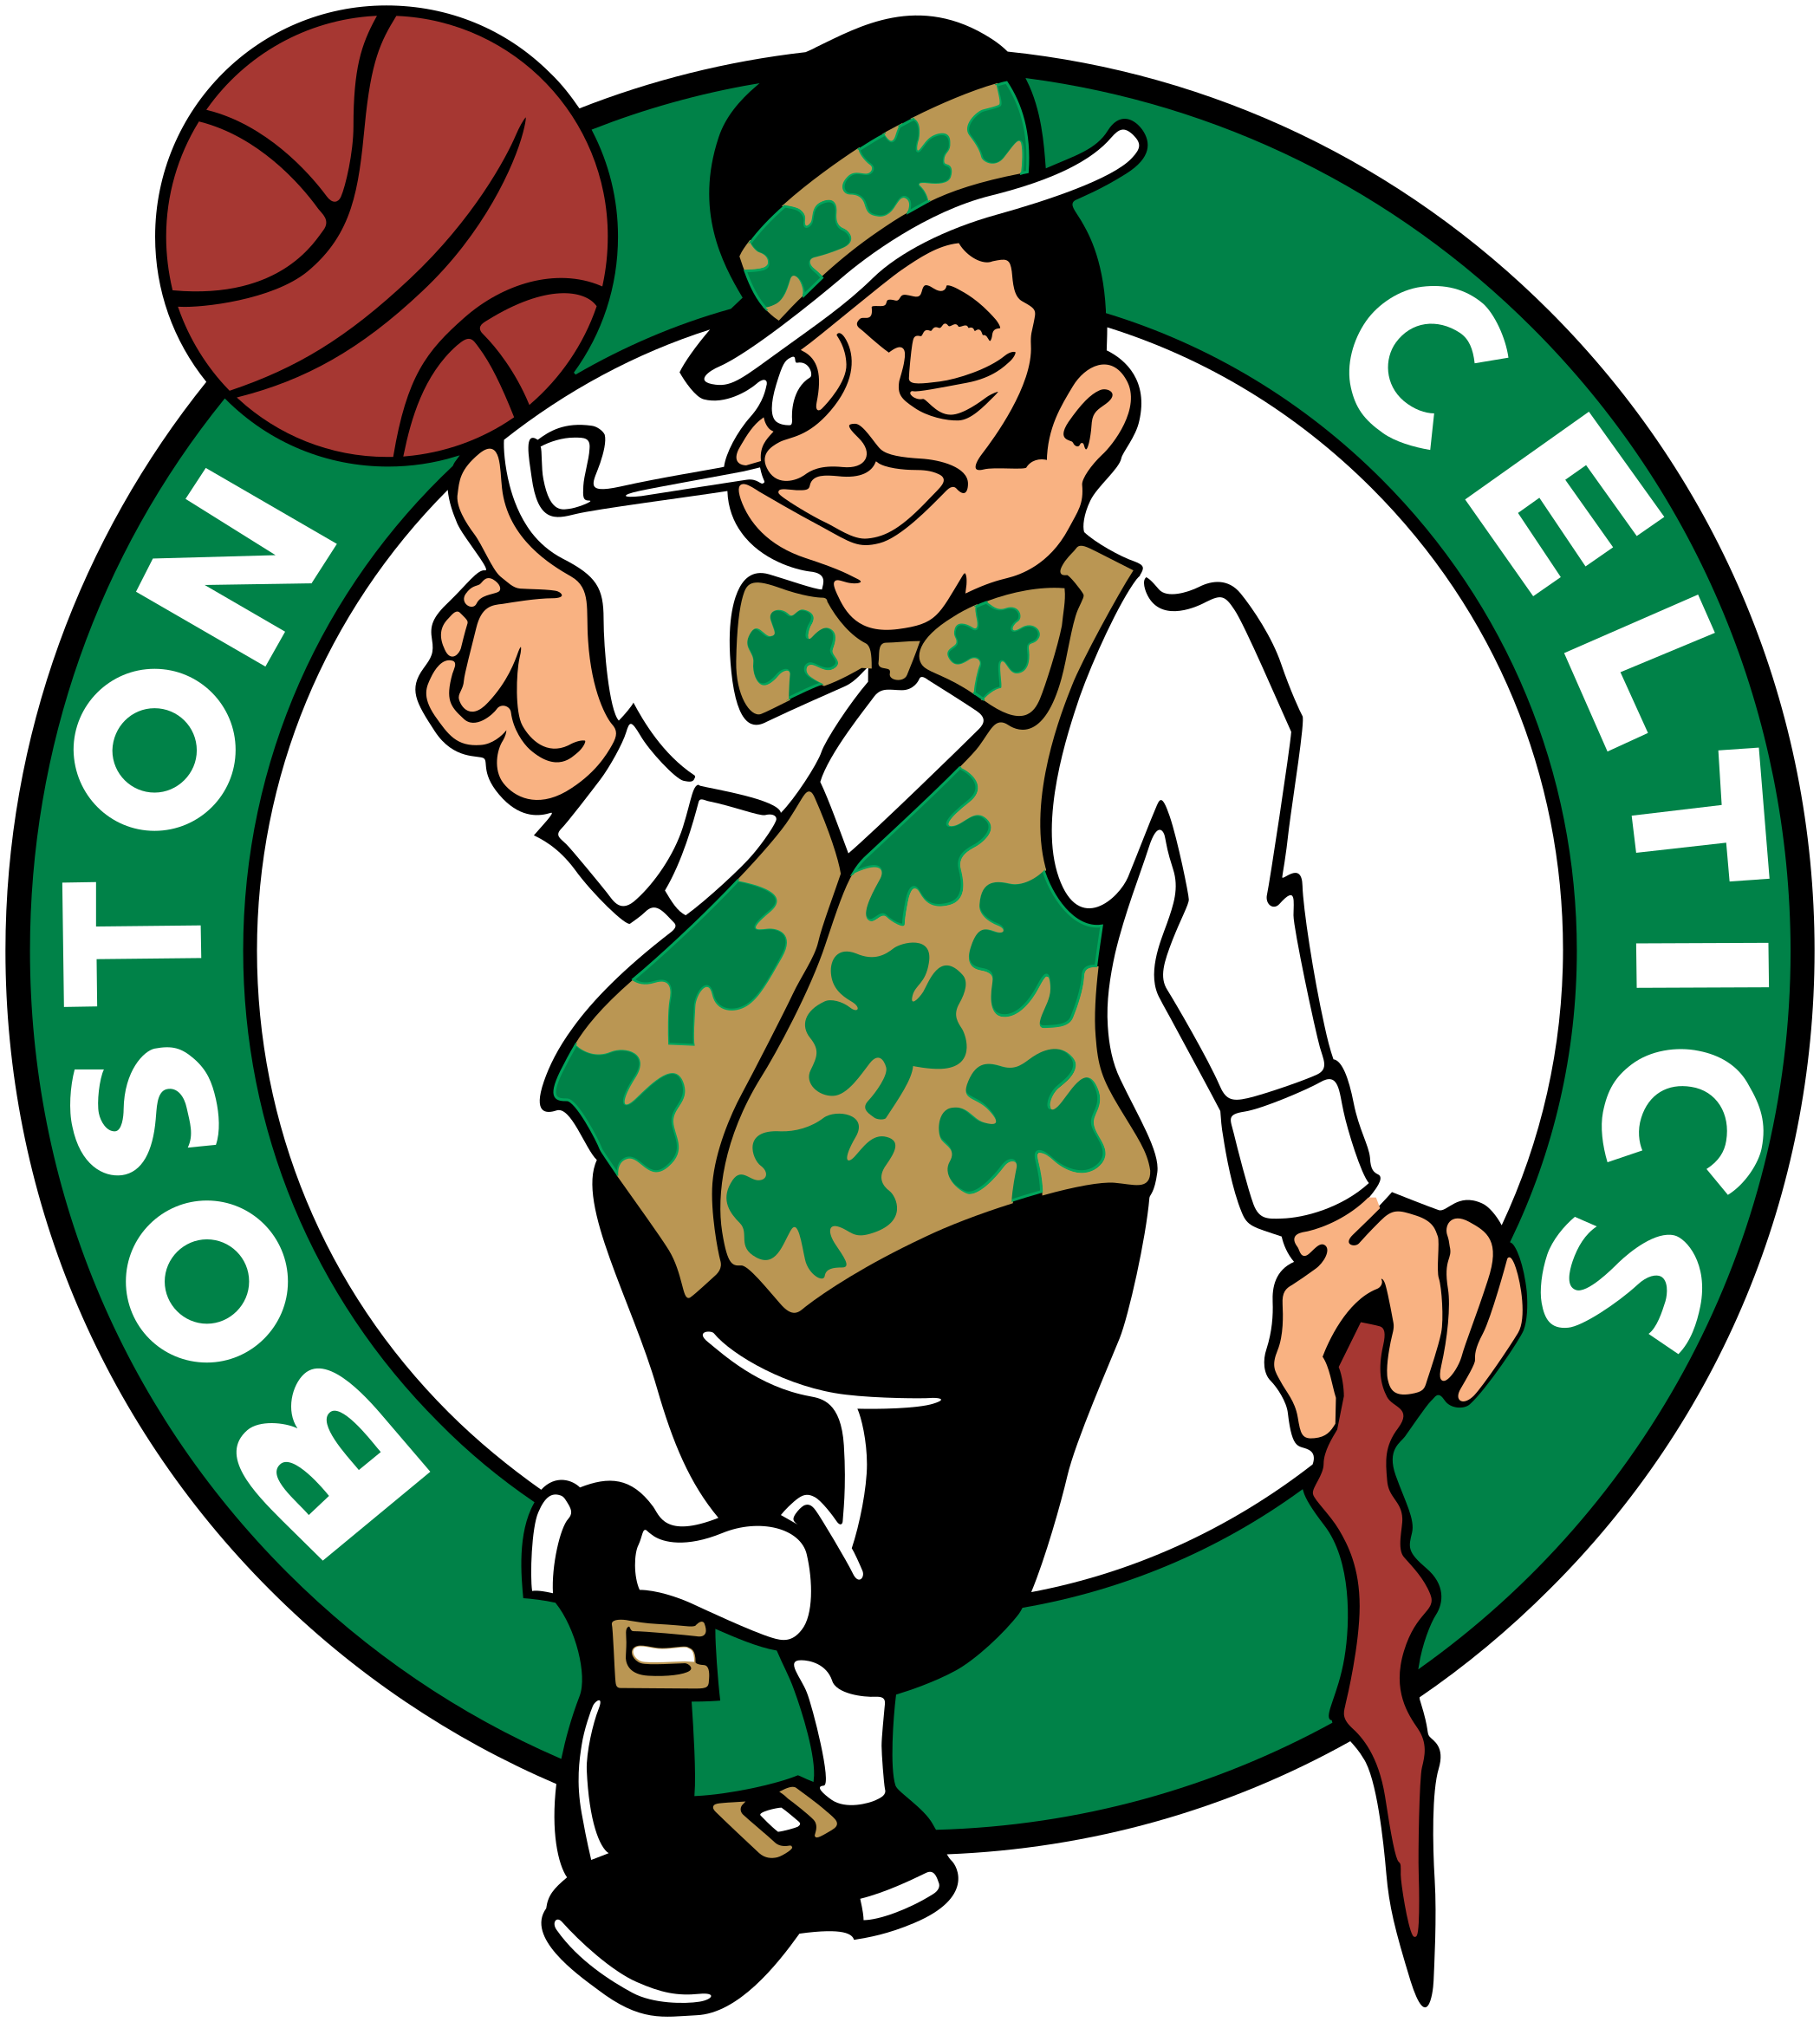 boston celtics logo 1 - Boston Celtics Logo